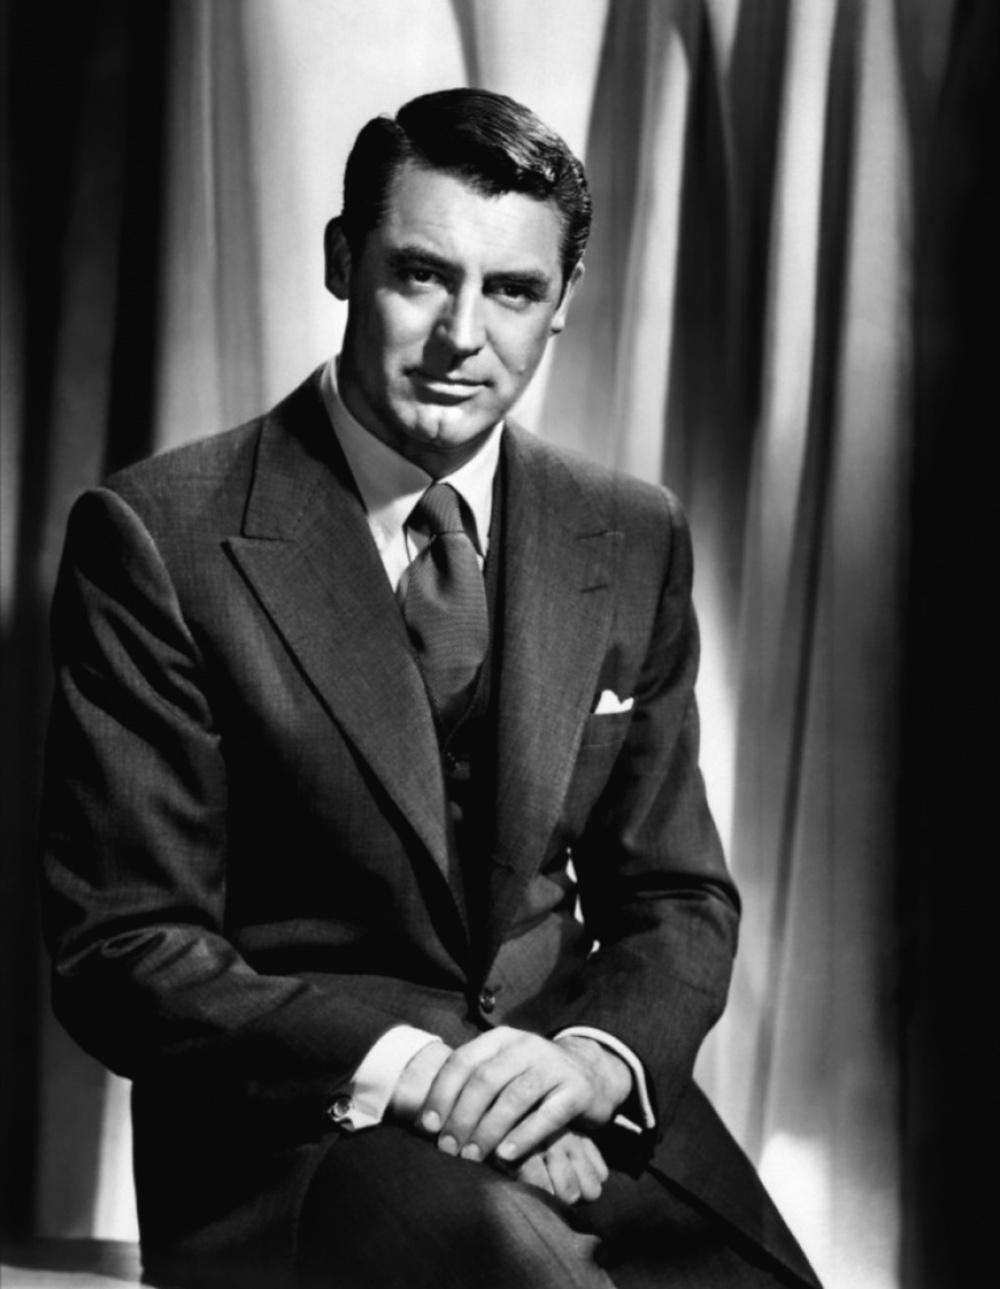 Photo №1962 Cary Grant.